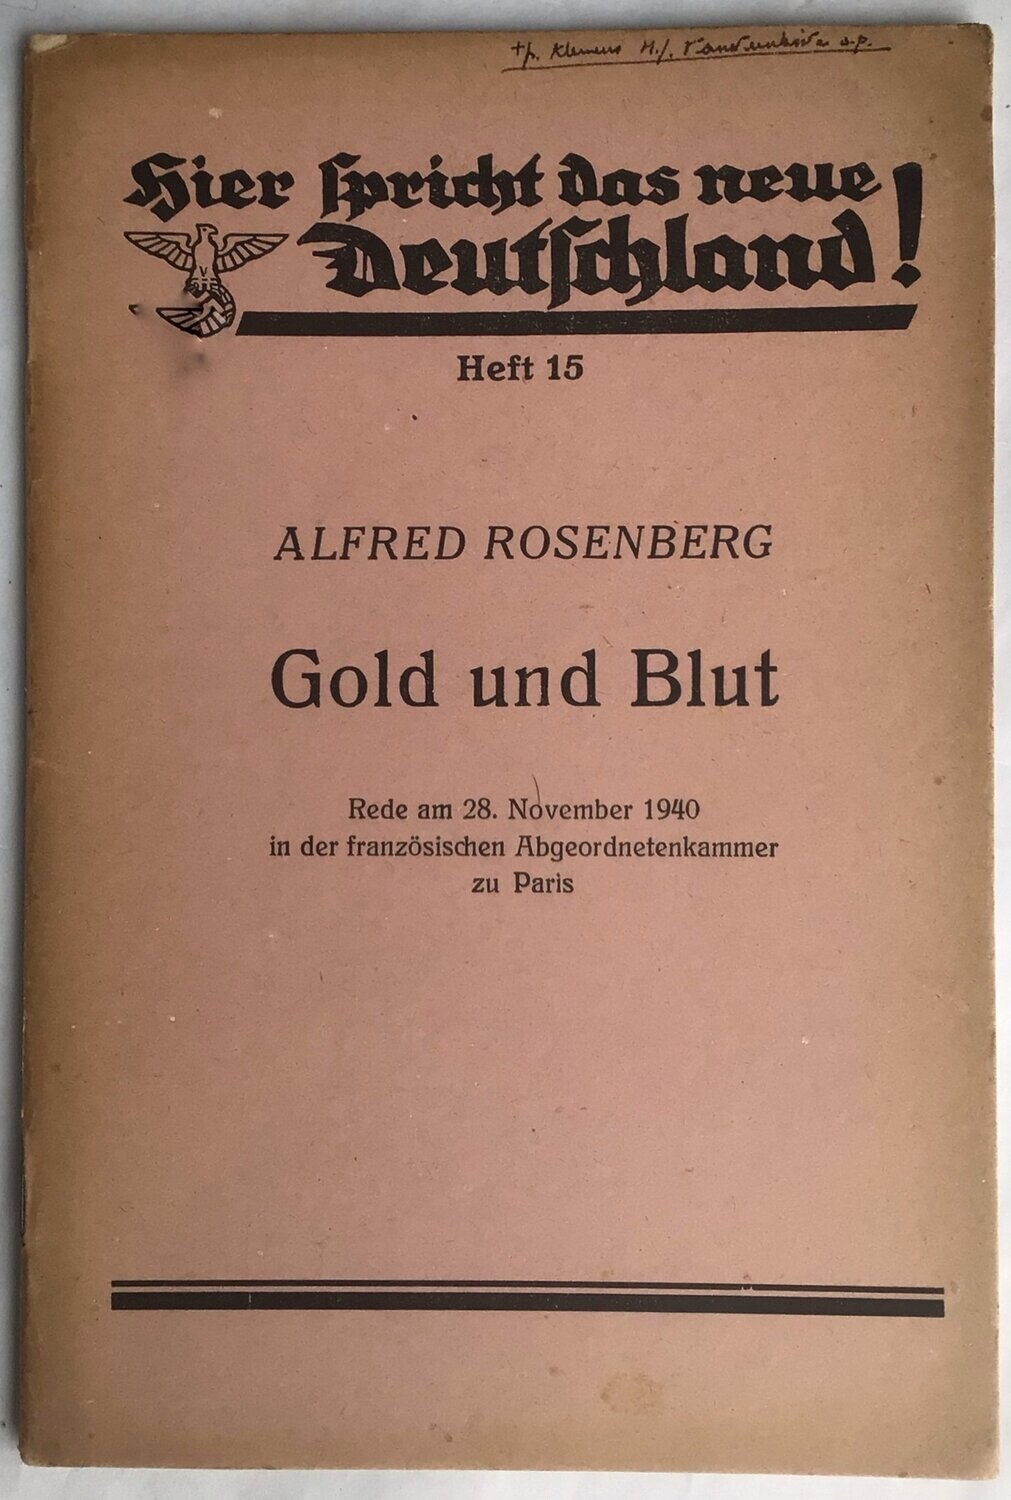 Hier spricht das neue Deutschland - Heft 15 - Gold und Blut von Alfred Rosenberg